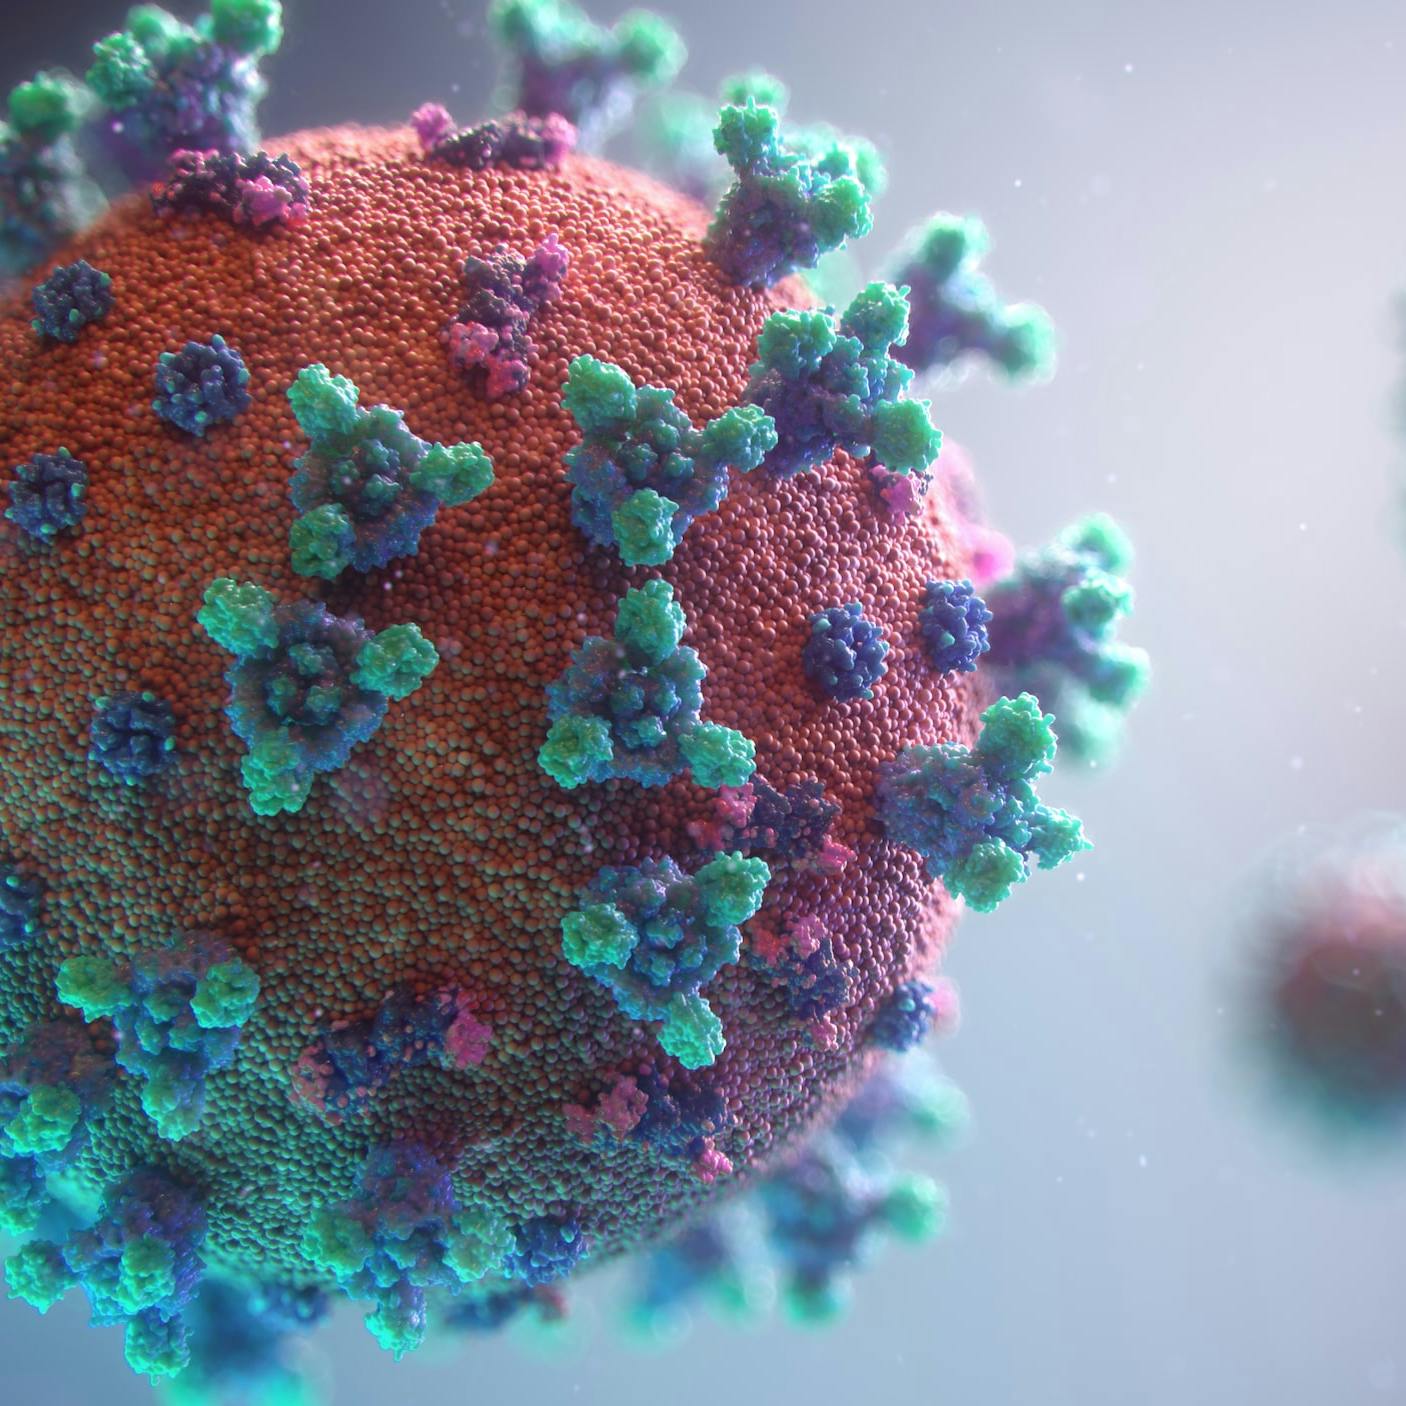 Three-dimensional visualization of Coronavirus